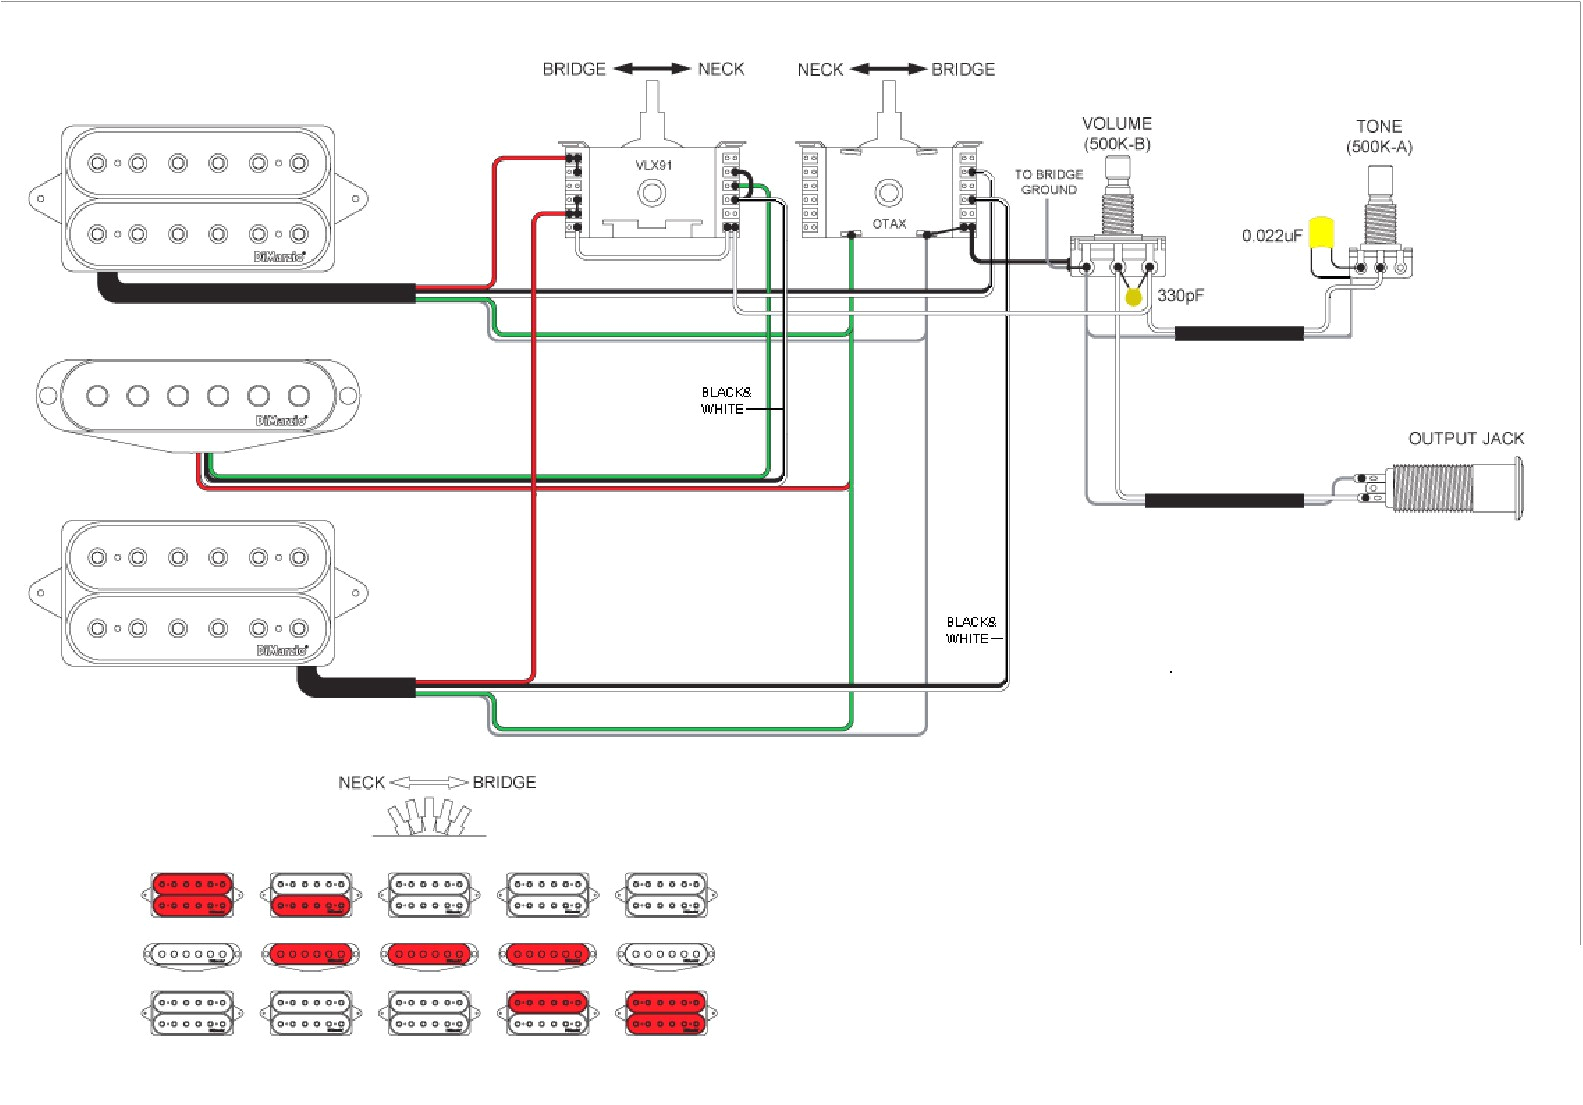 wiring diagram free download sz320 wiring diagram usedwiring diagrams free download ax7221 wiring diagram used free